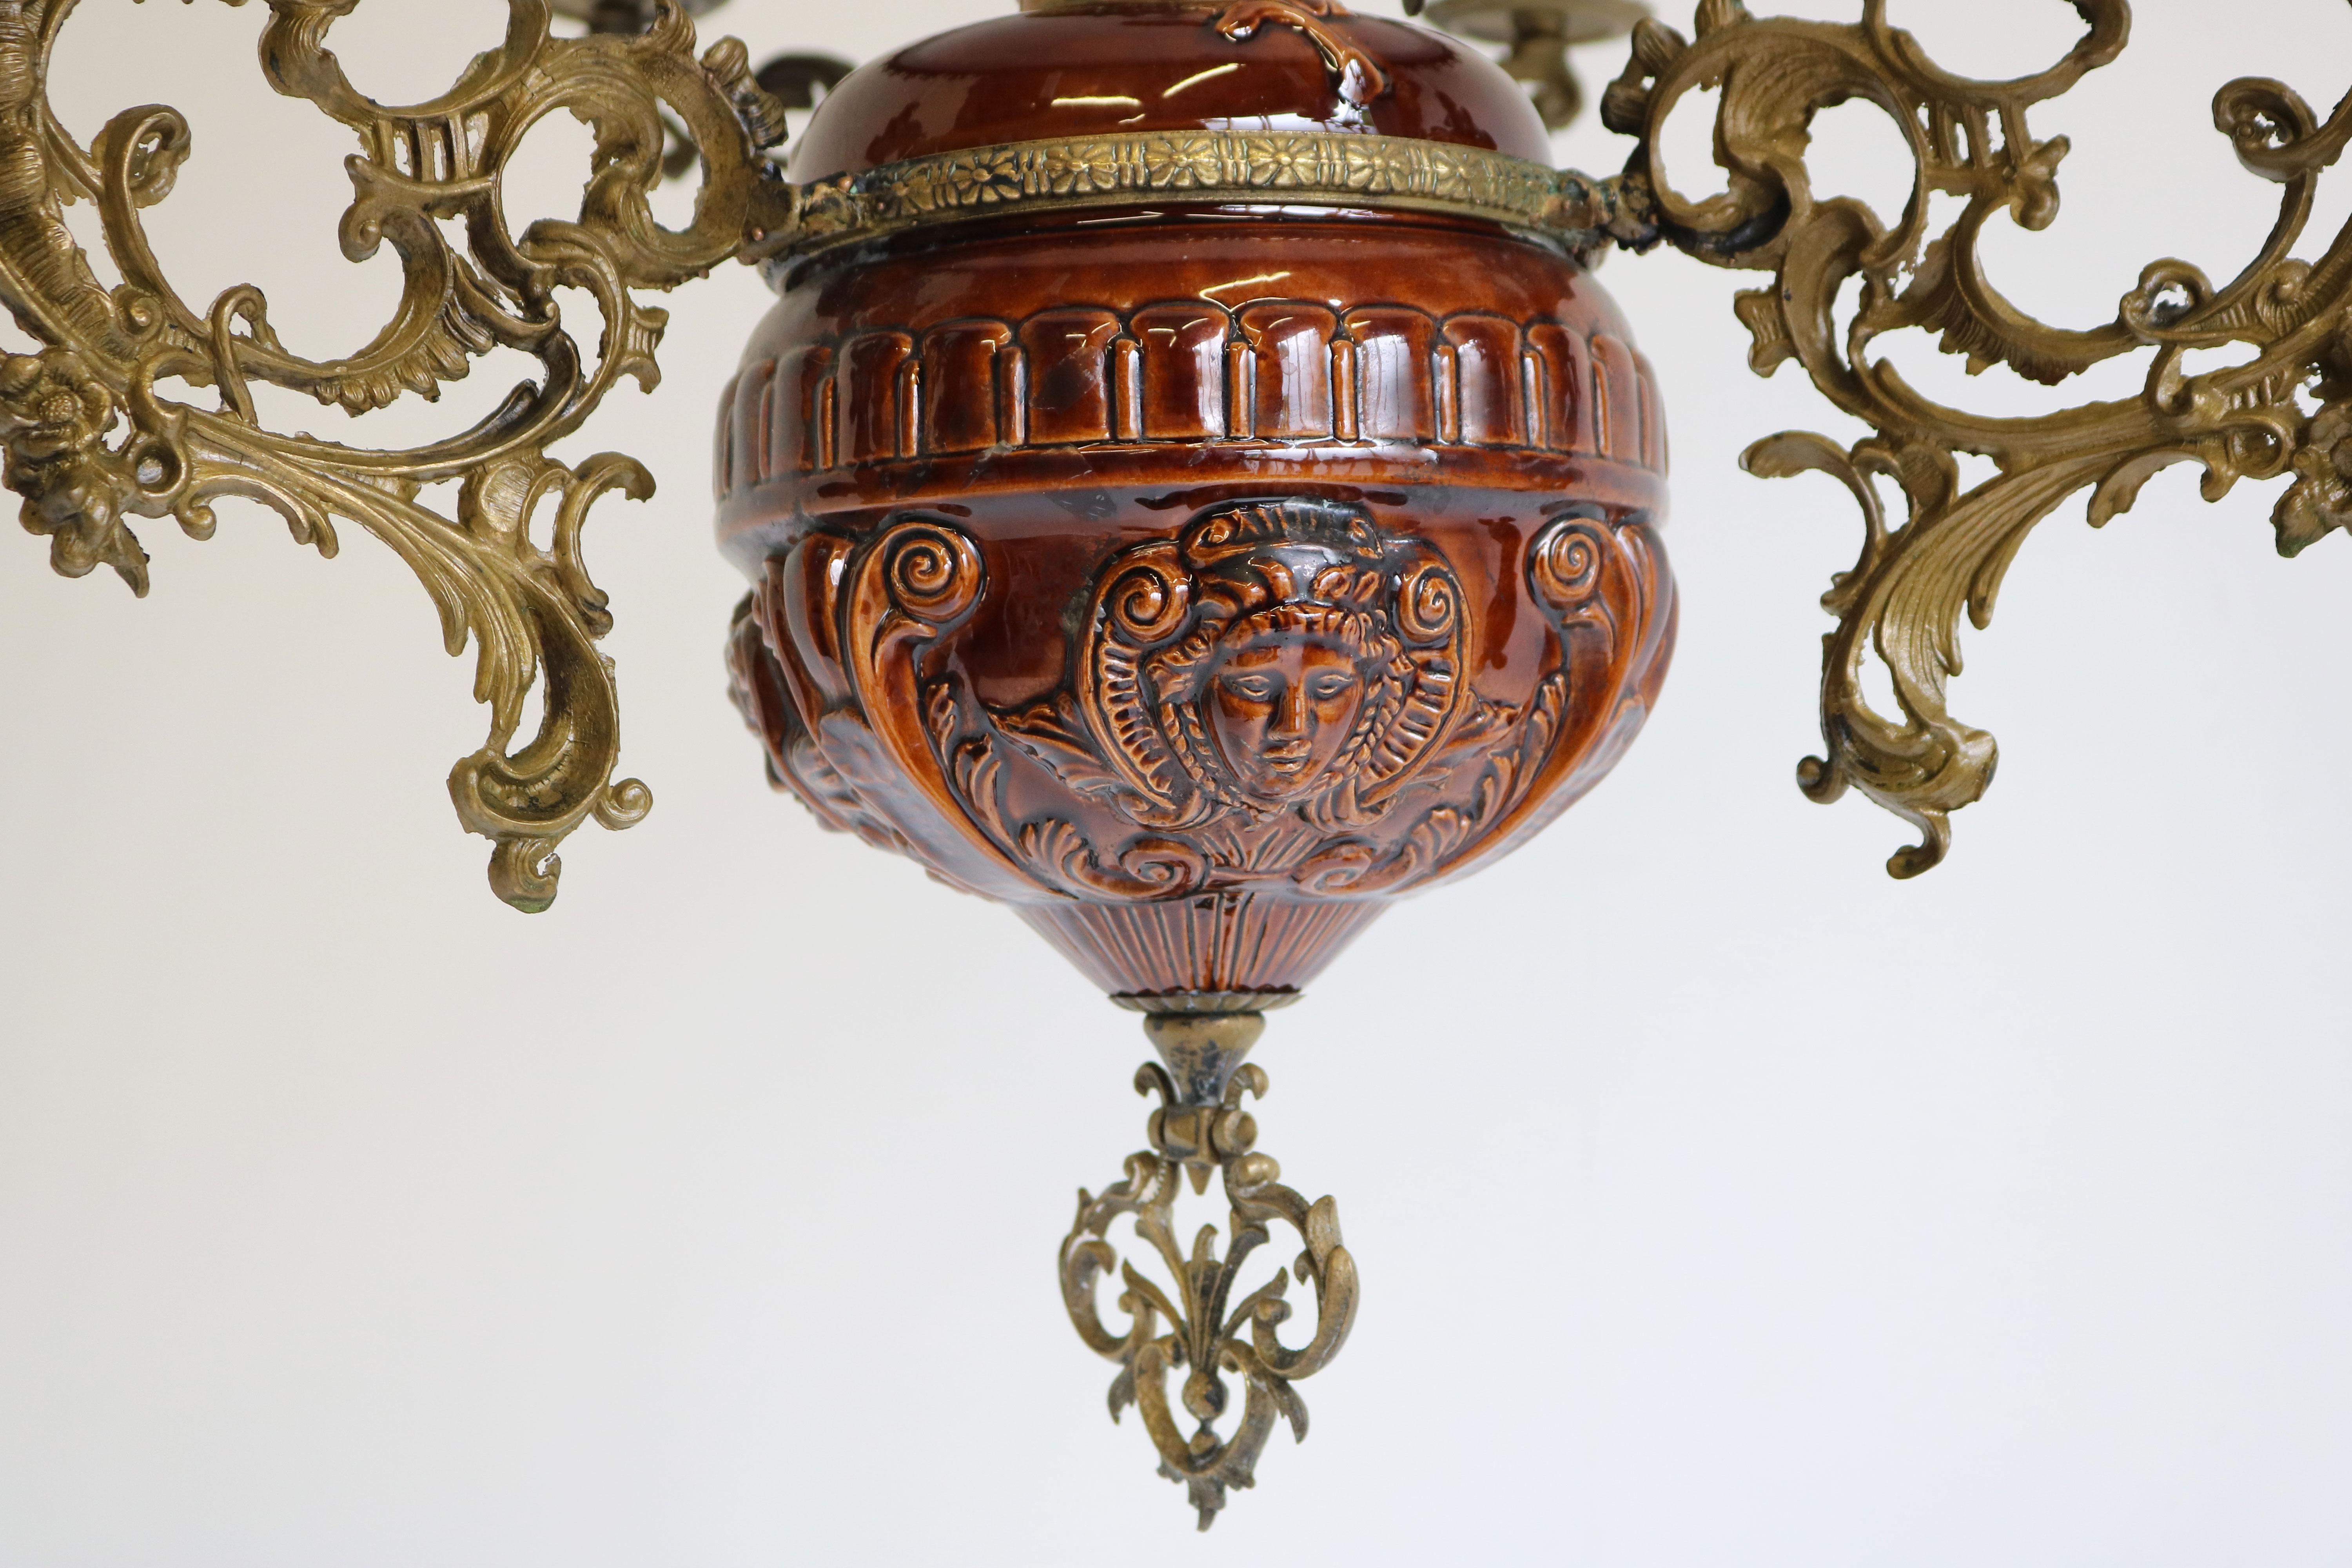 Cette grande et impressionnante lampe à huile date du début des années 1900. Il est fabriqué à partir de différents matériaux de qualité et de techniques coûteuses. C'est l'une des raisons pour lesquelles cette antiquité fabriquée à la main est une